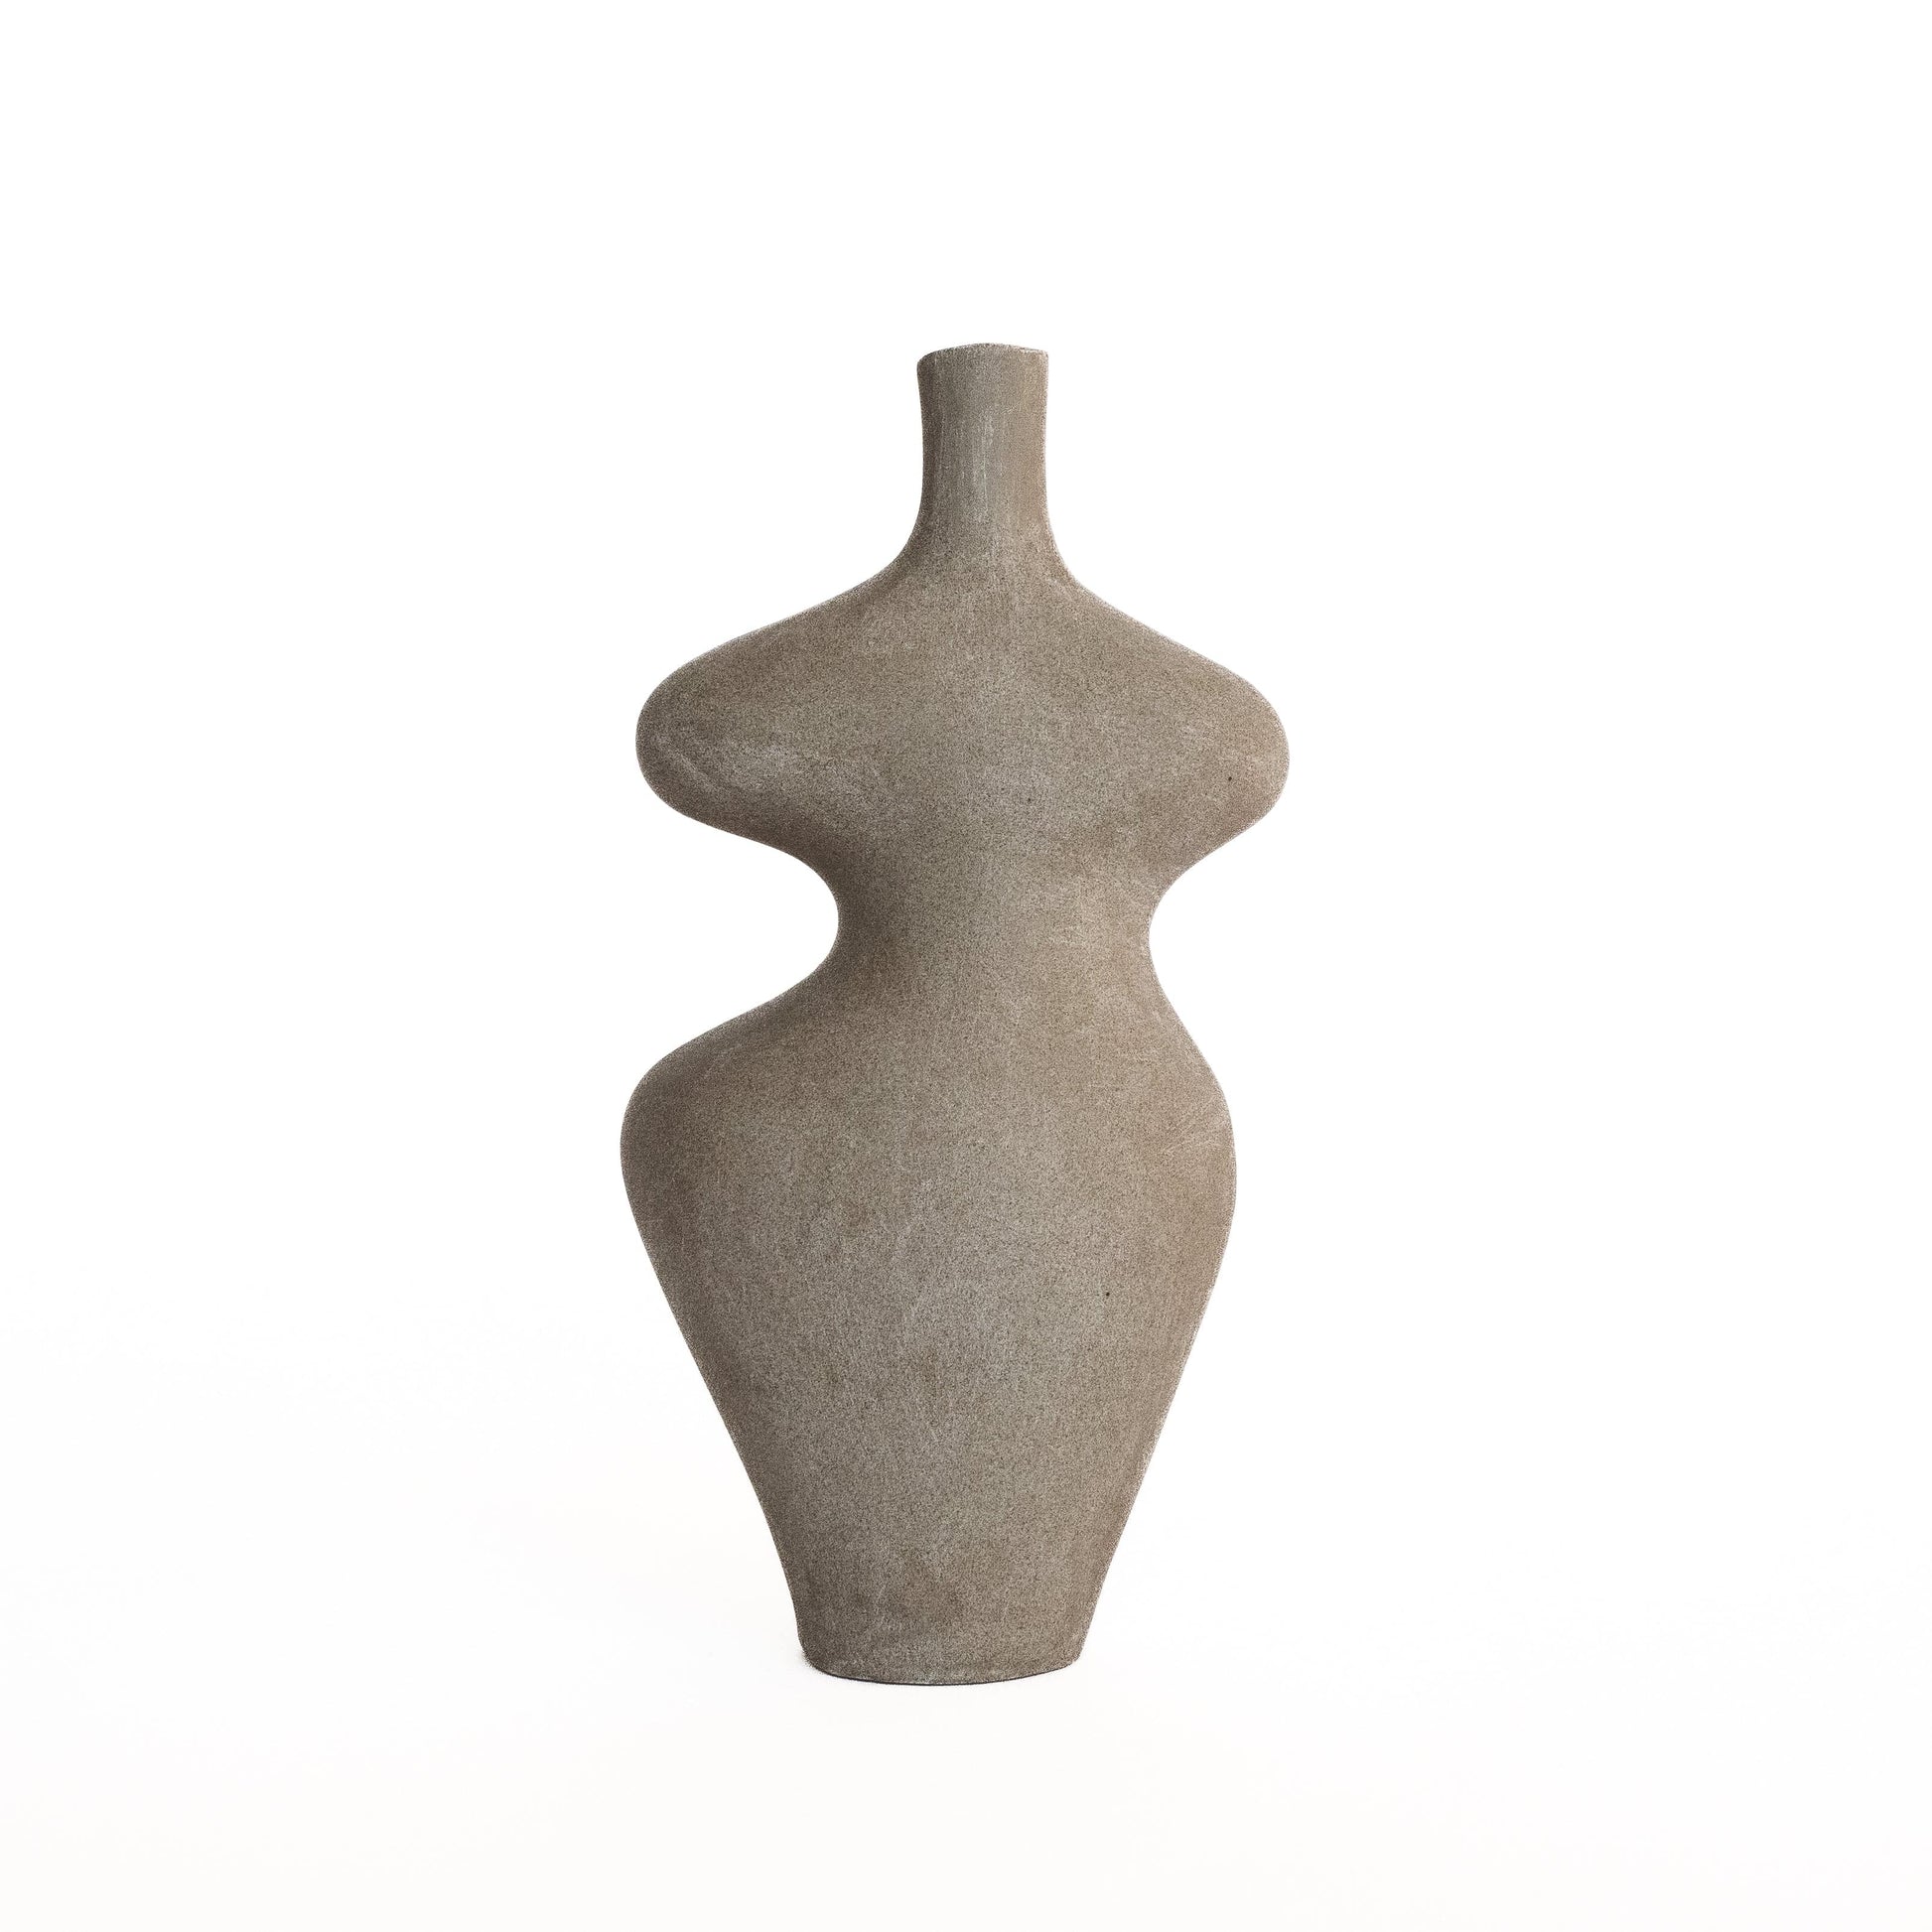 Form Vase #30 by Whitney Bender